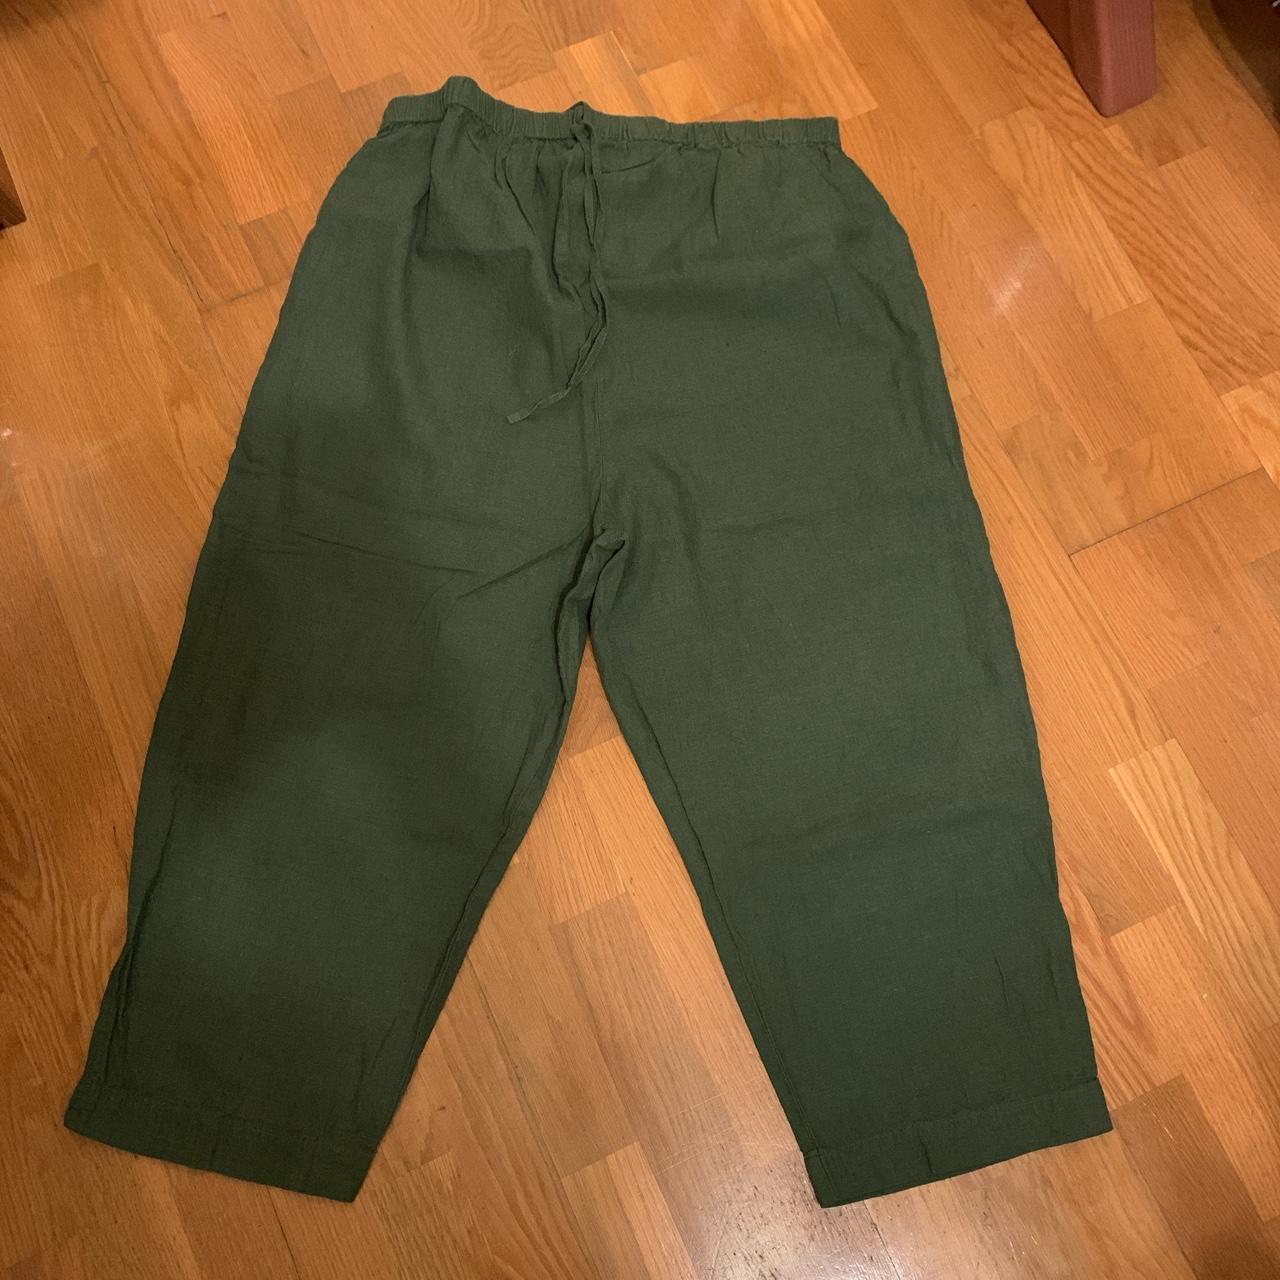 DUOltd Women's Green Trousers